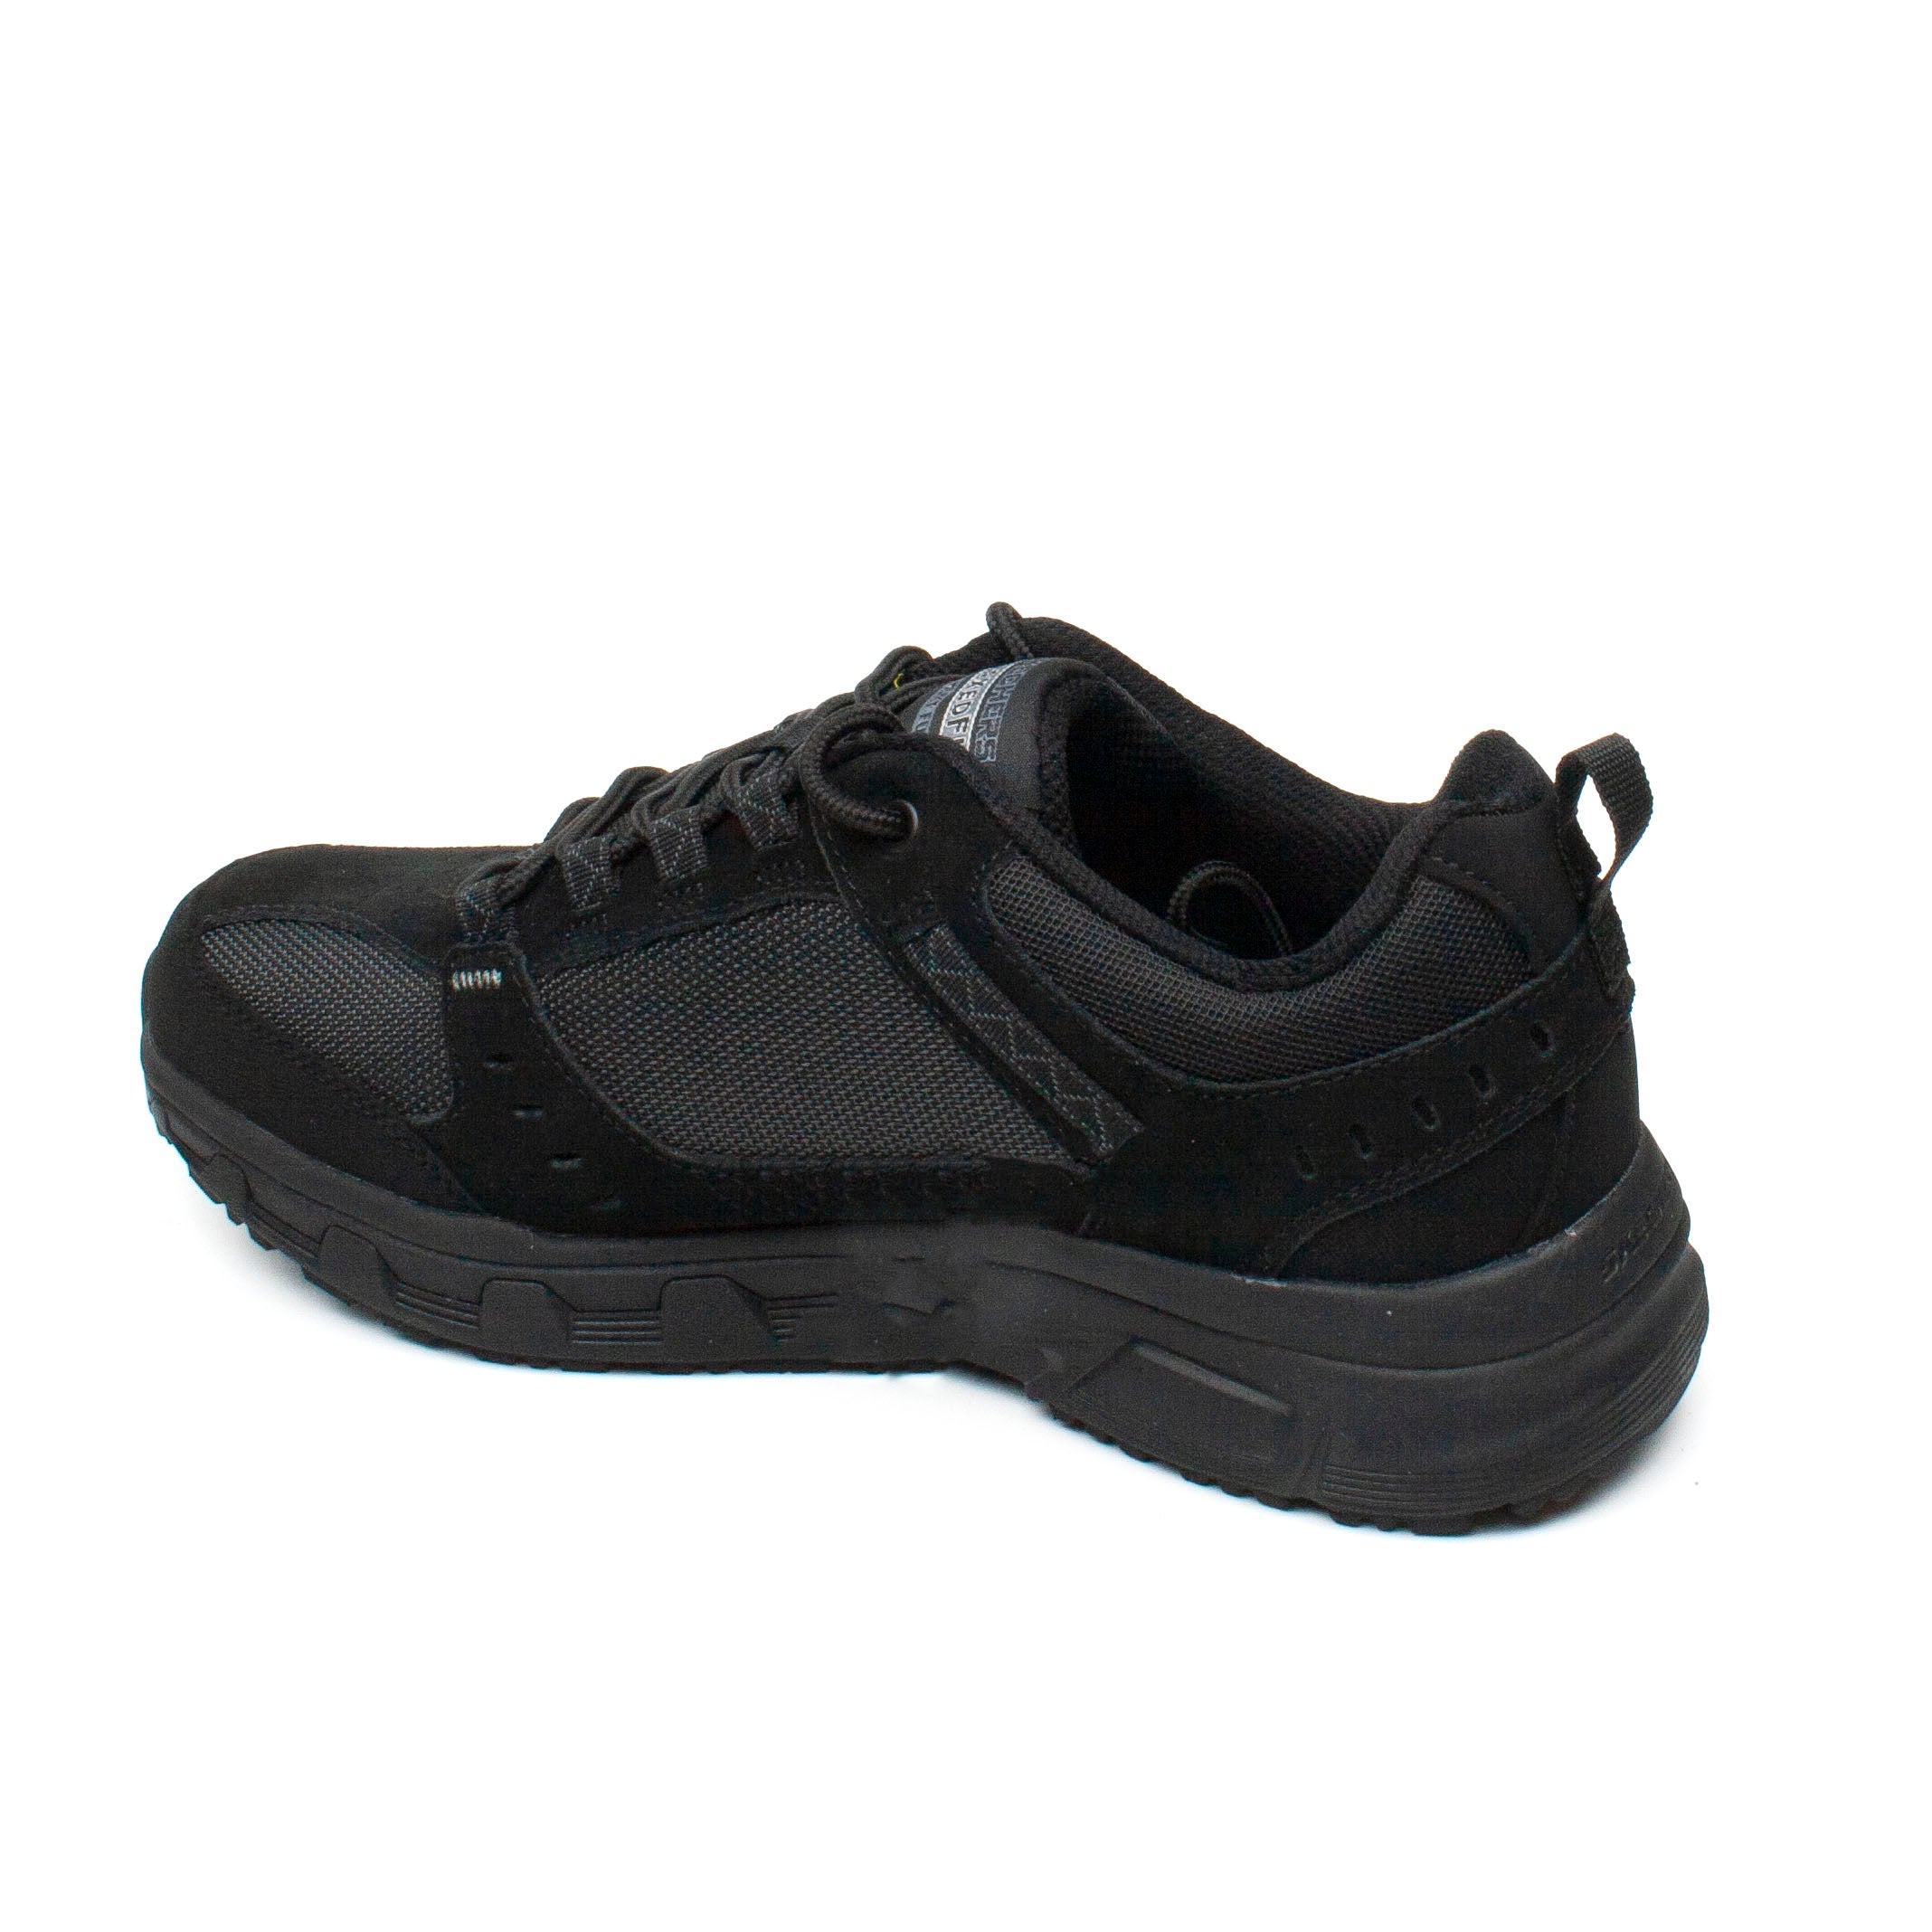 Skechers Pantofi barbati sport 51893 negru IB0579-NG